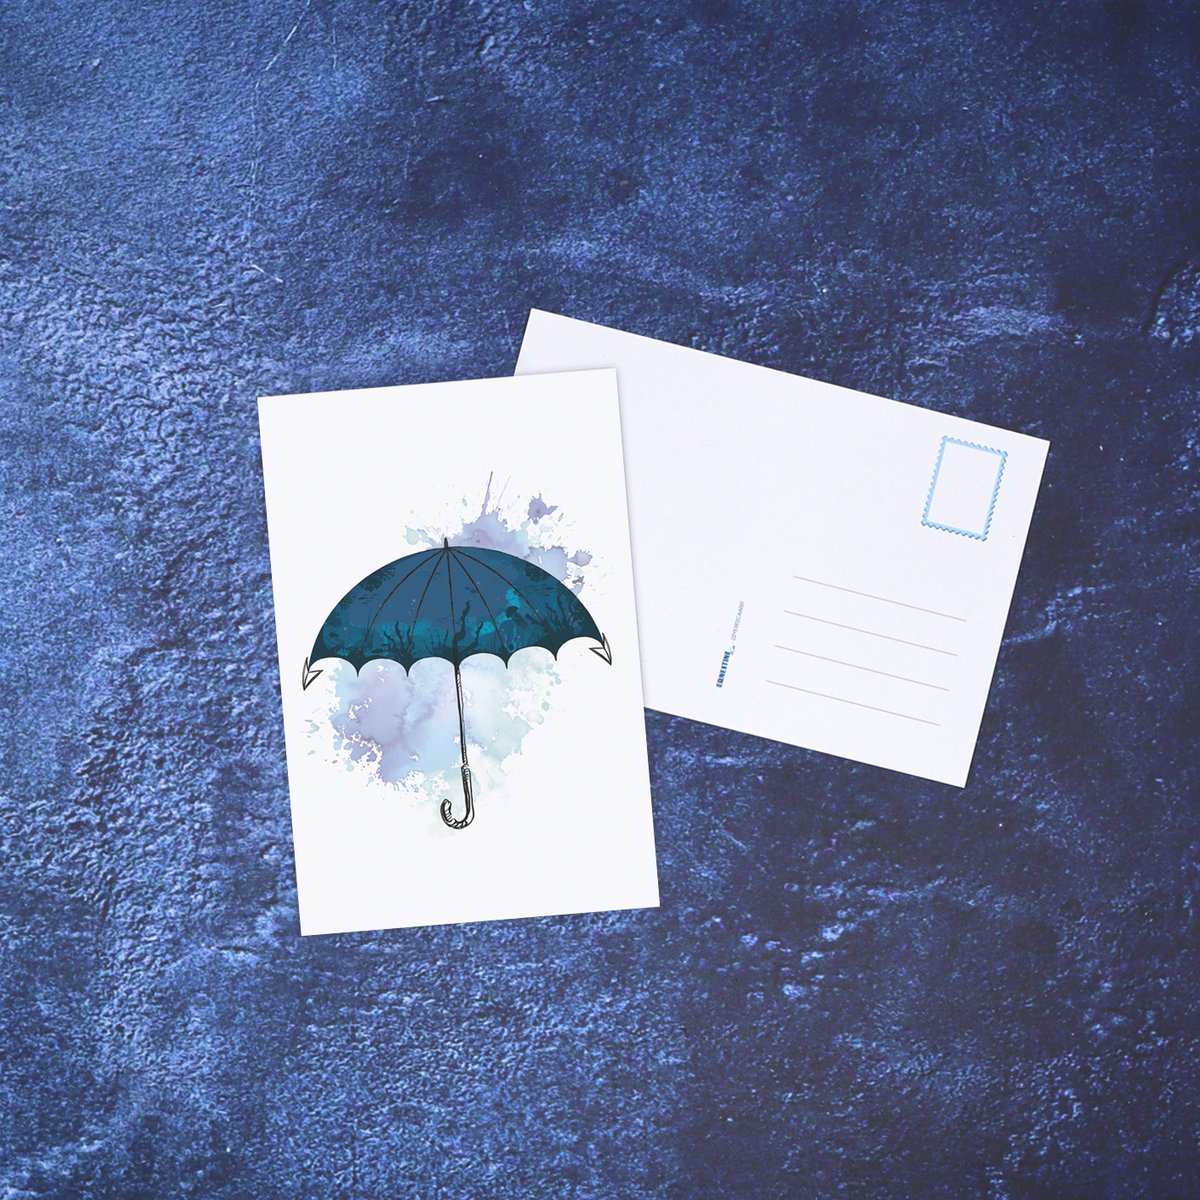 𝑪𝒂𝒓𝒕𝒆 𝒑𝒐𝒔𝒕𝒂𝒍𝒆 '𝑷𝒍𝒖𝒊𝒆 𝒎𝒂𝒓𝒊𝒏𝒆'

(regardez bien, mais si, de plus près... ⚓️☂️🐟)

#Carterie #CartePostale #Ancre #AncreMarine #FondsMarins #Ocean #SousLocean #Parapluie #Umbrella #FaitEnFrance #ArtisanatFrancais #ErnestineEtCie 

ernestine-etcie.fr/produit/carte-…